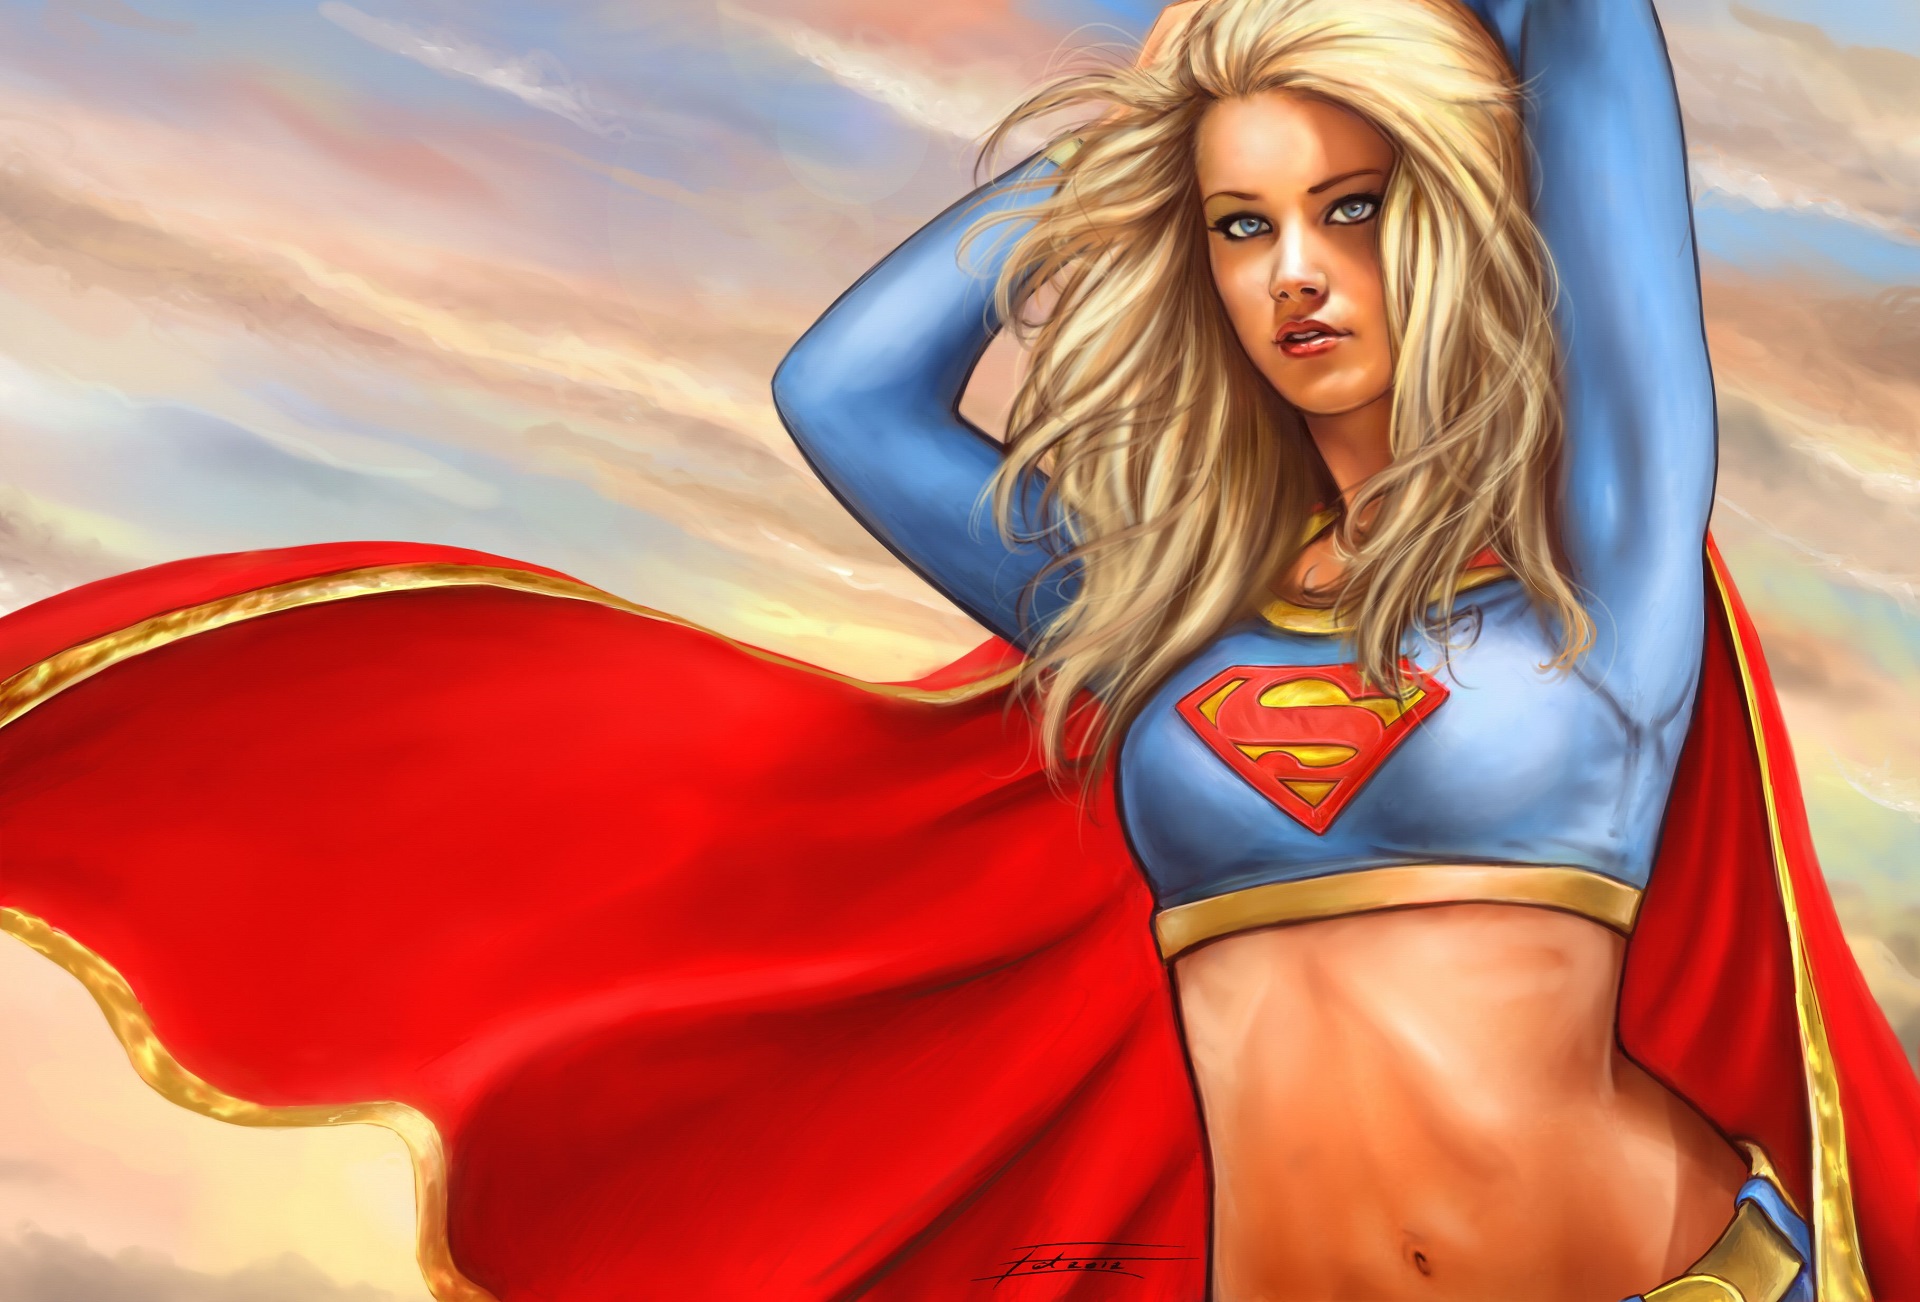 General 1920x1302 Supergirl artwork women blonde blue eyes Amber Heard superheroines cape digital art watermarked